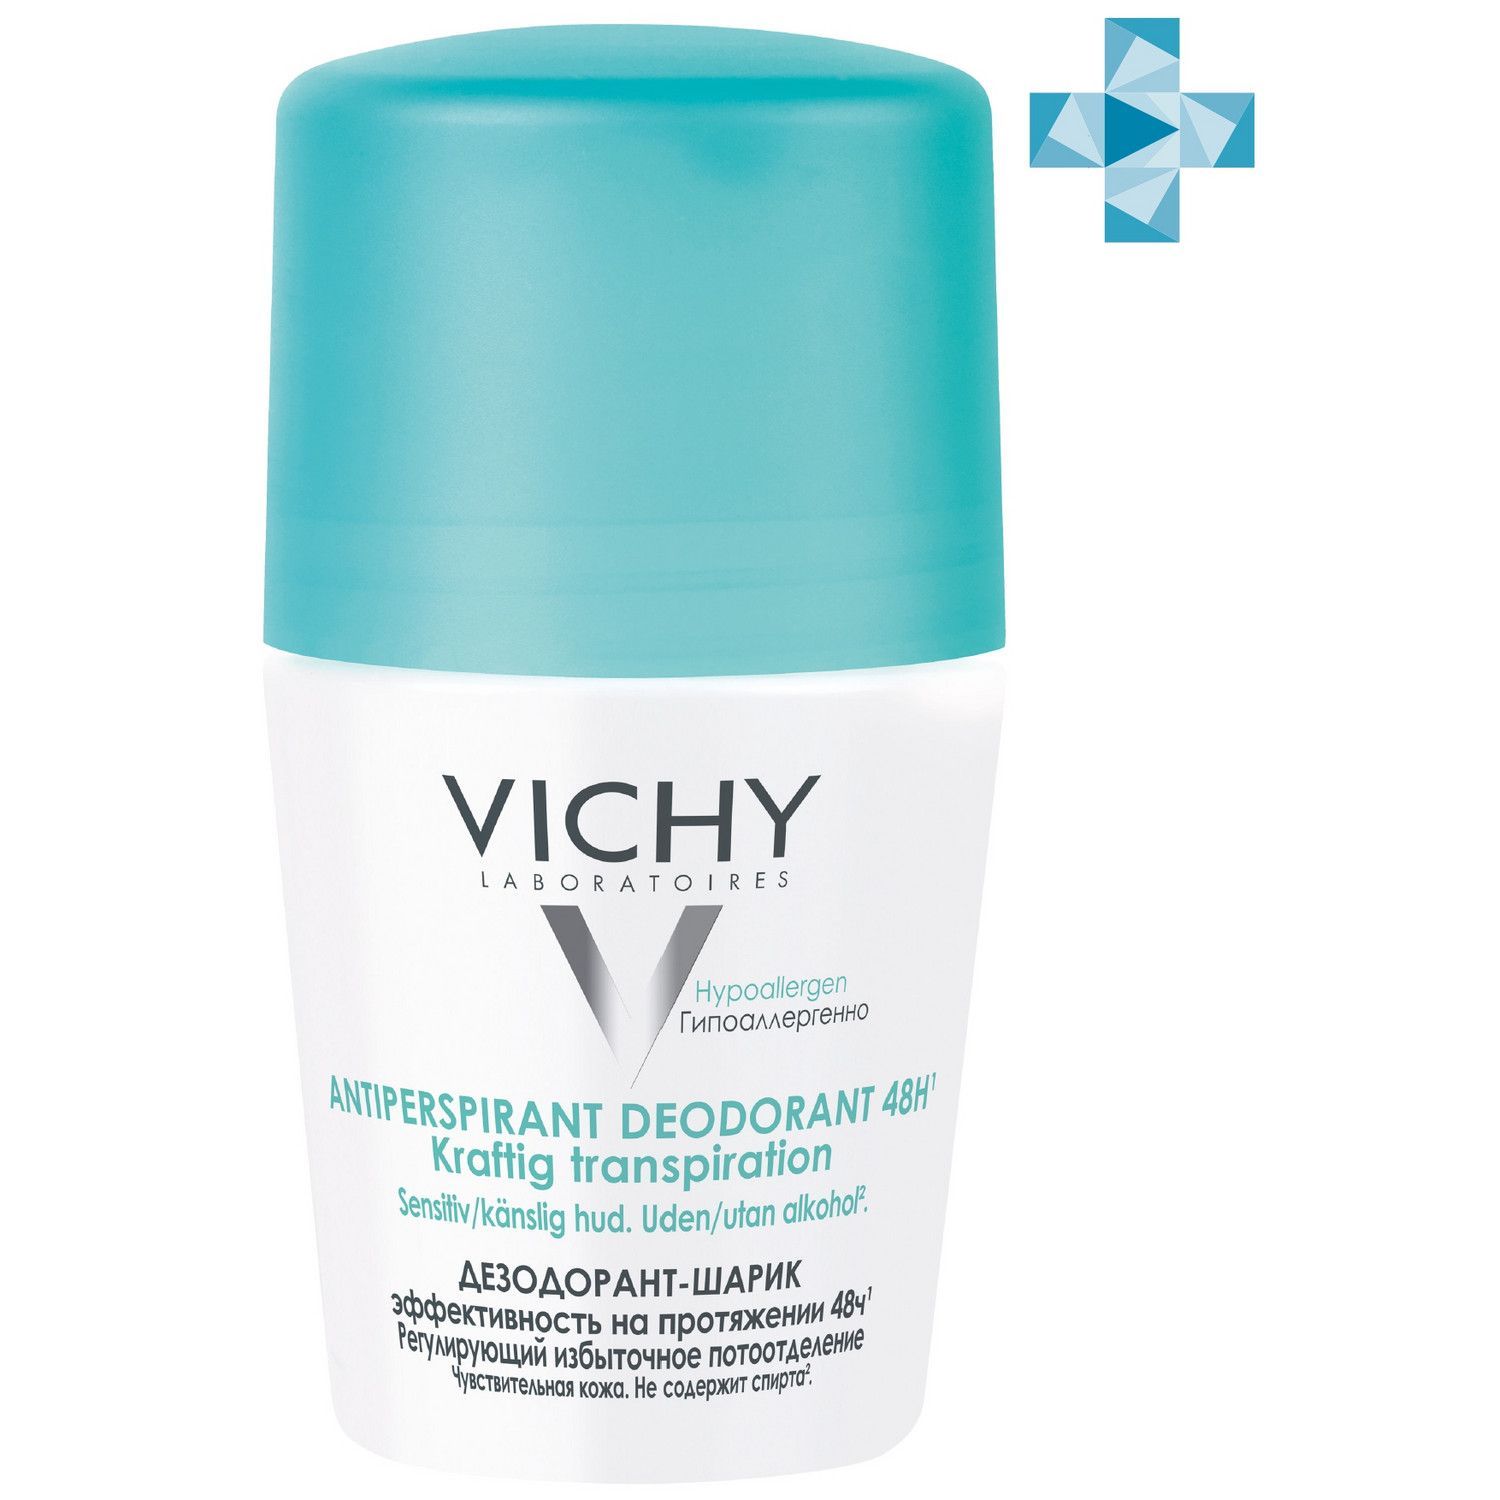 Vichy Deodorant - Дезодорант шариковый регулирующий избыточное потоотделение 50 мл